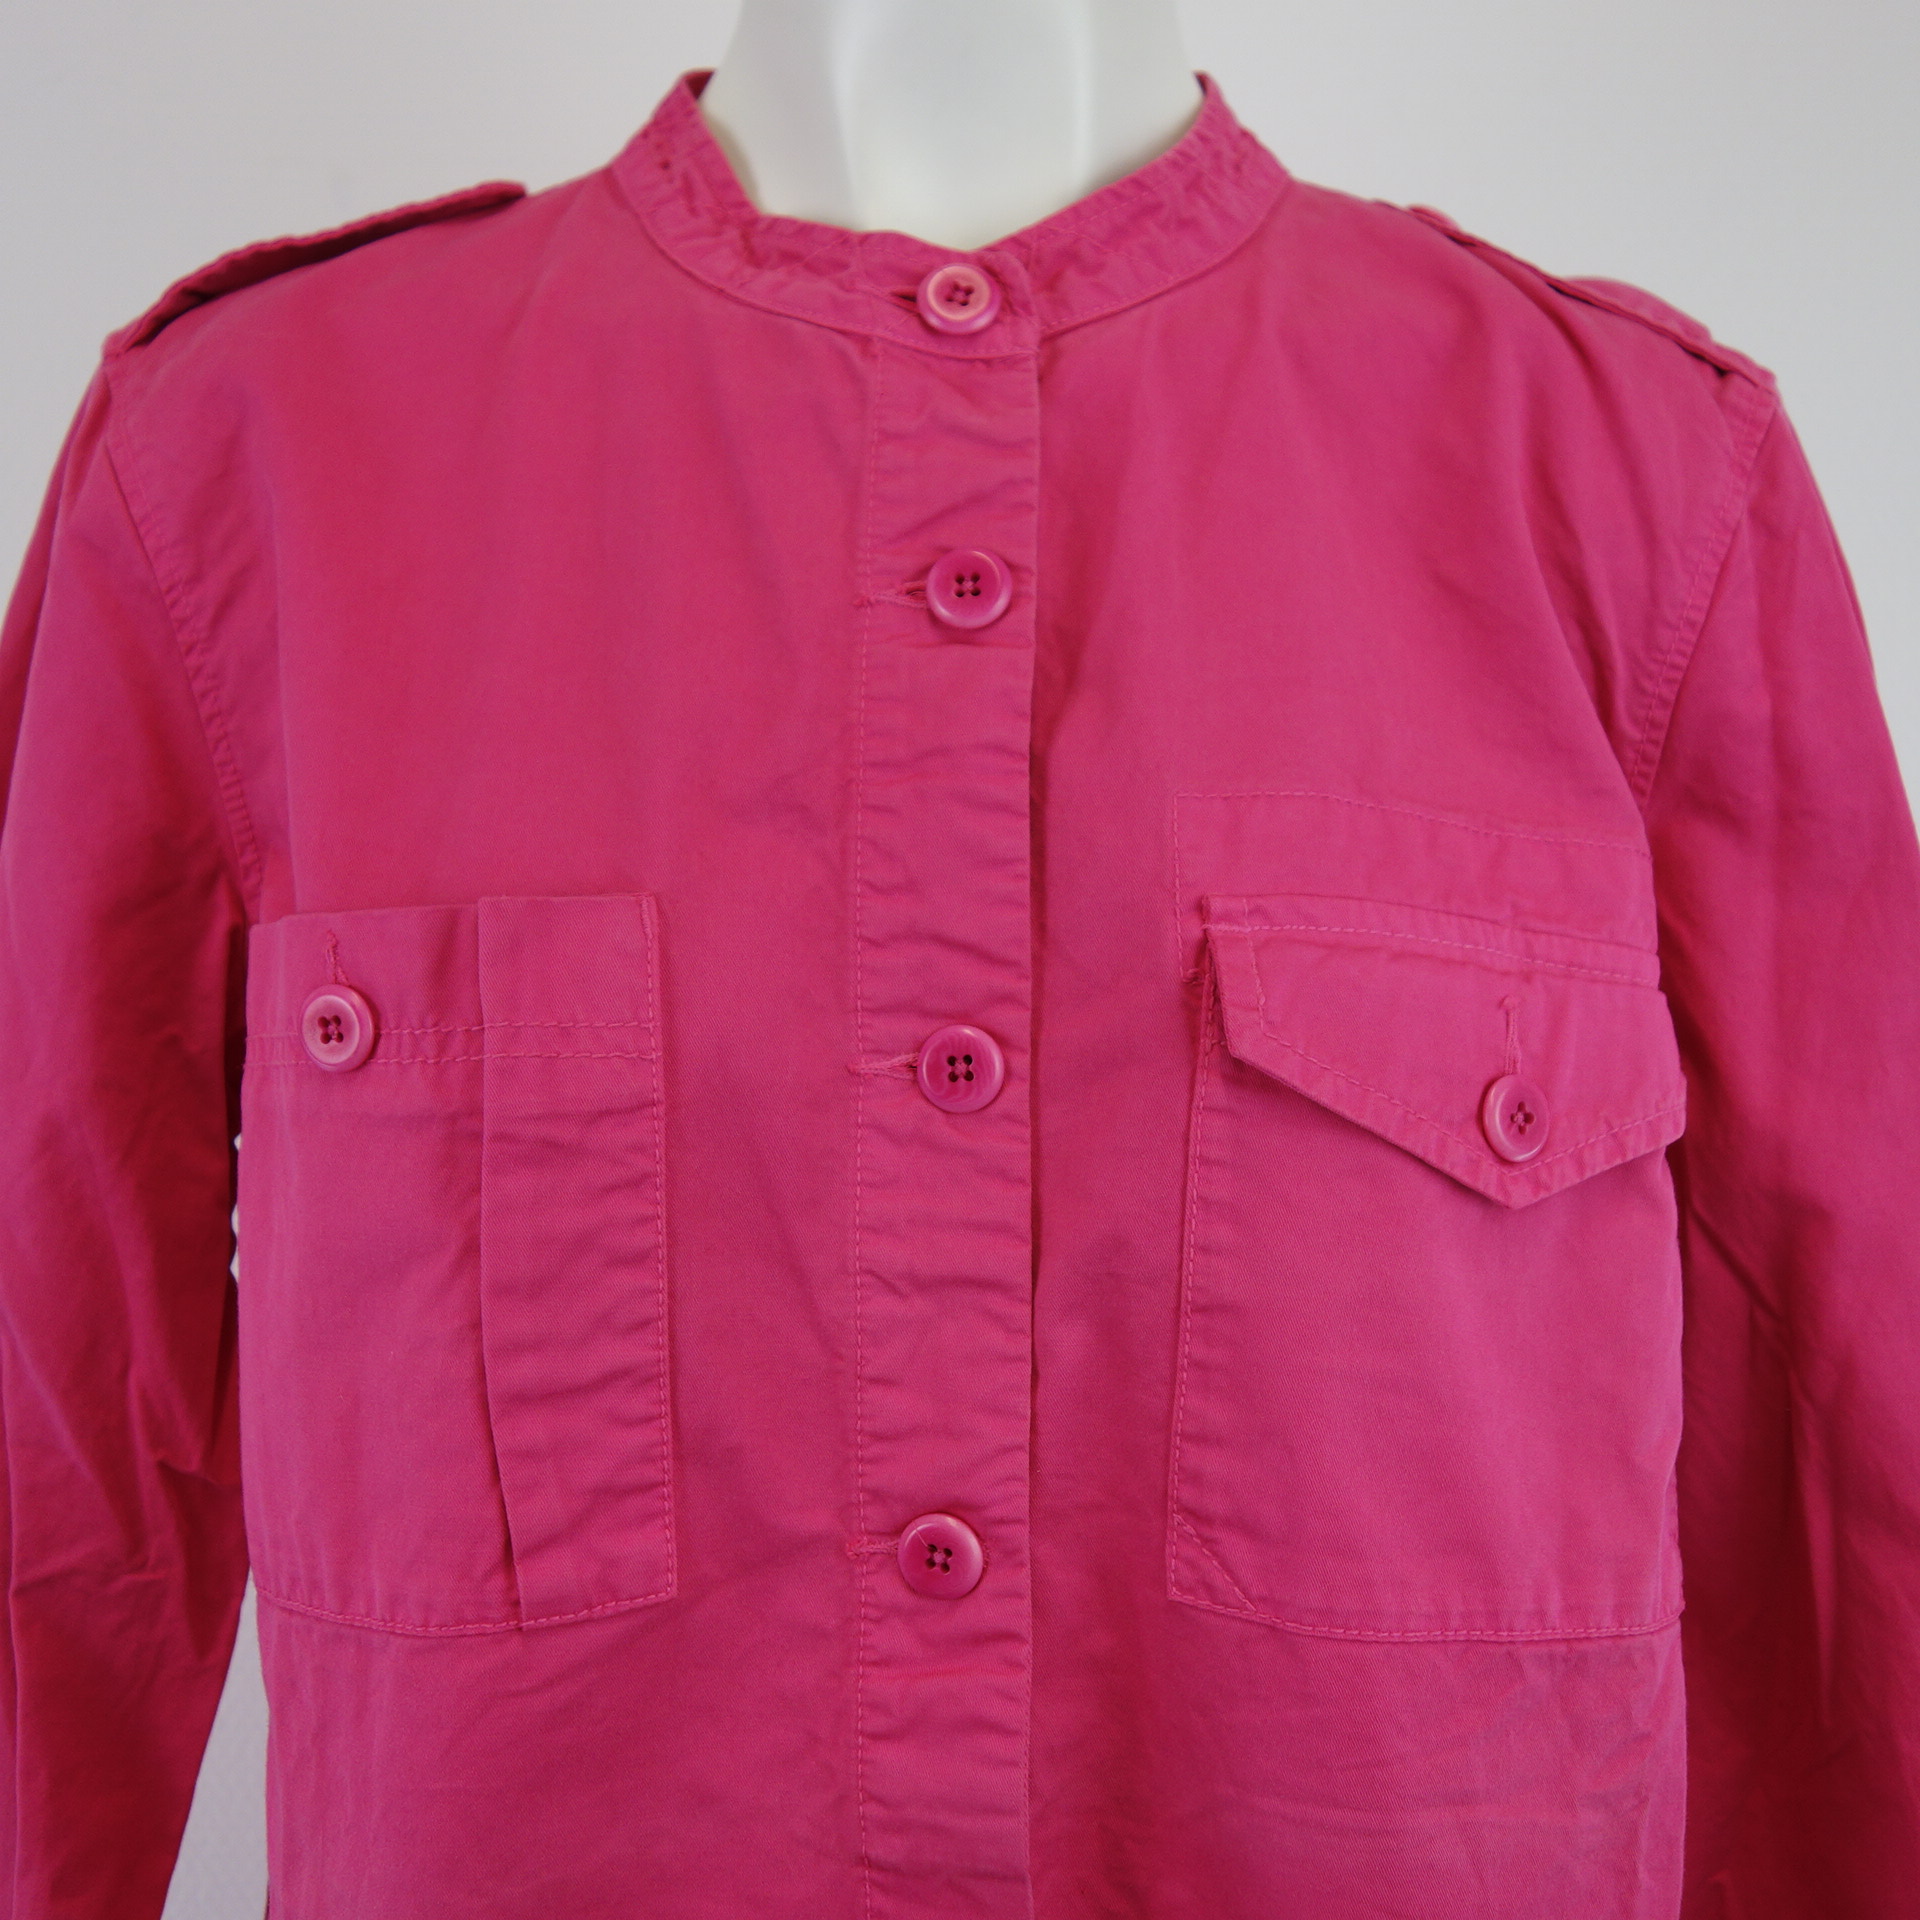 CLOSED Damen Shirt Jeanshemd Damenshirt Oberteil Hemd Denim Rosa Pink 